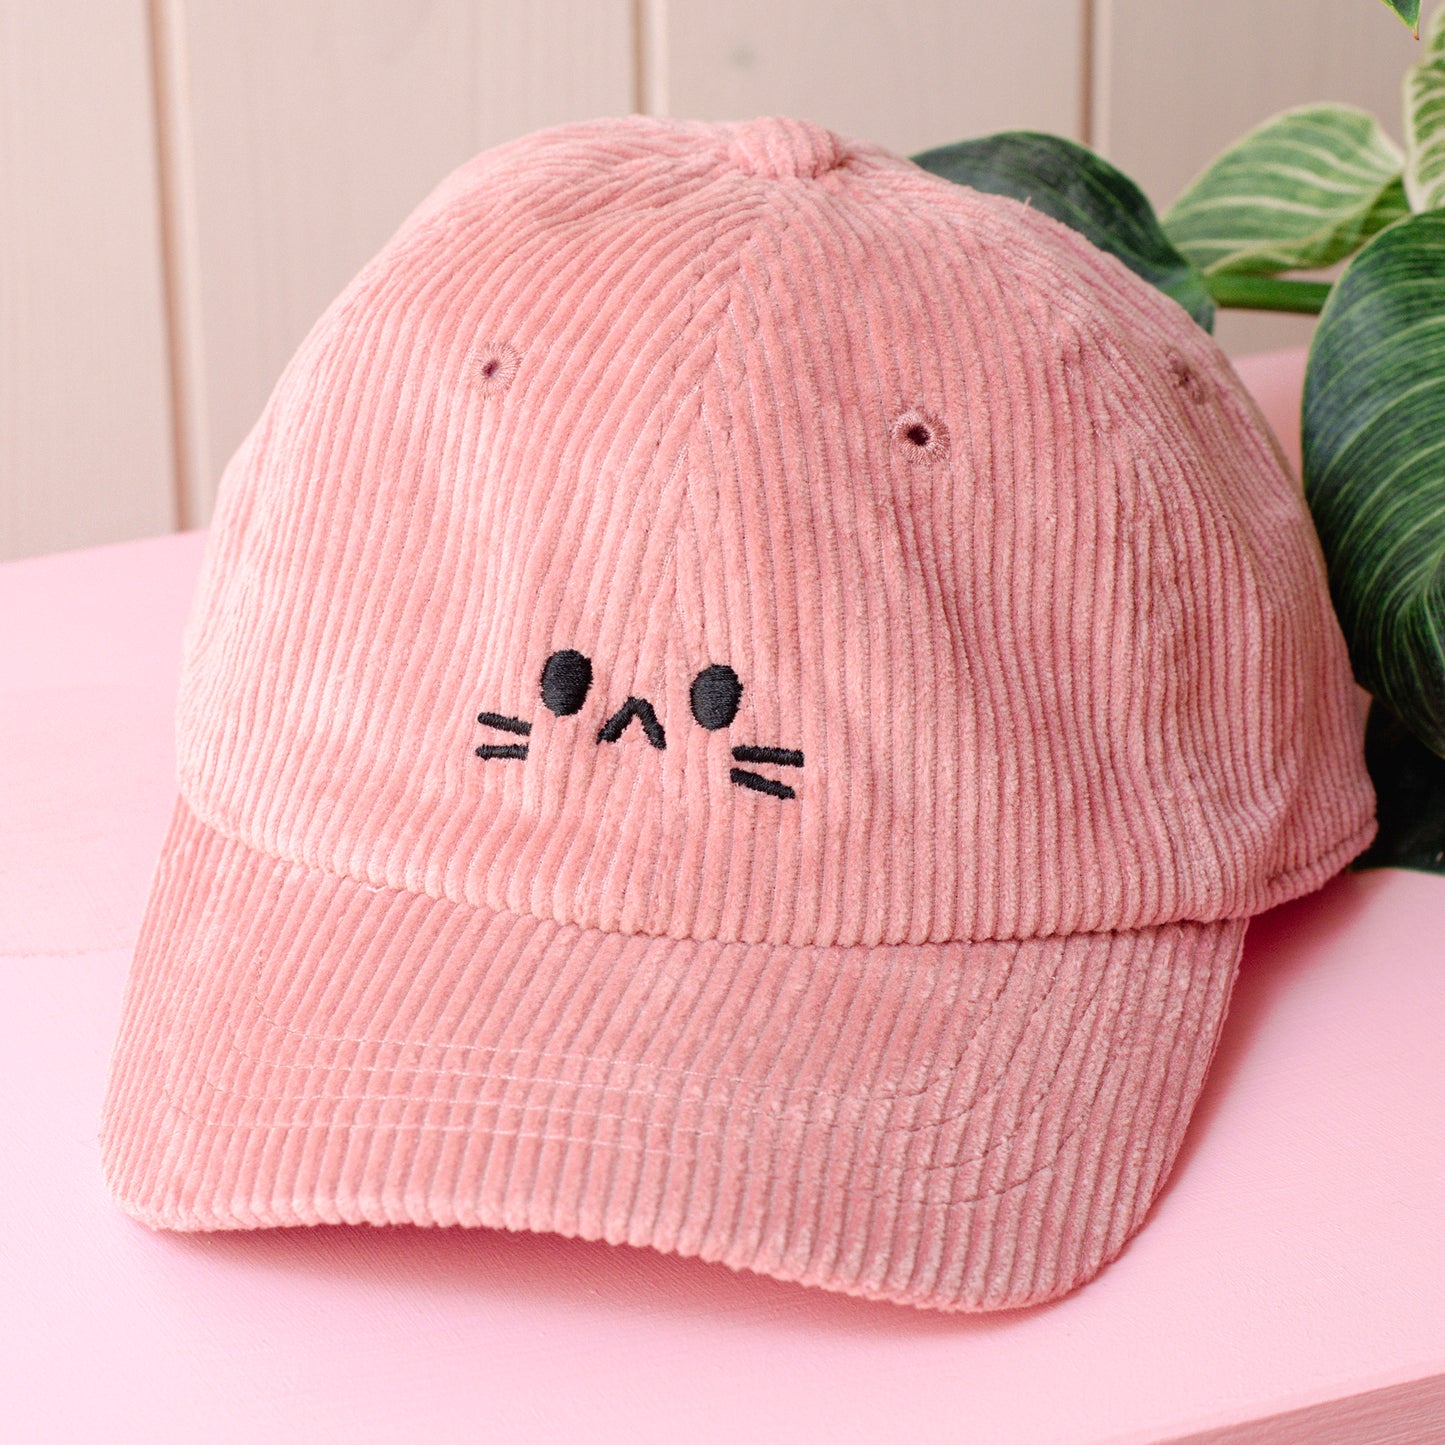 Neko Face - Looking Cute - Dad Hat - Dusty Pink